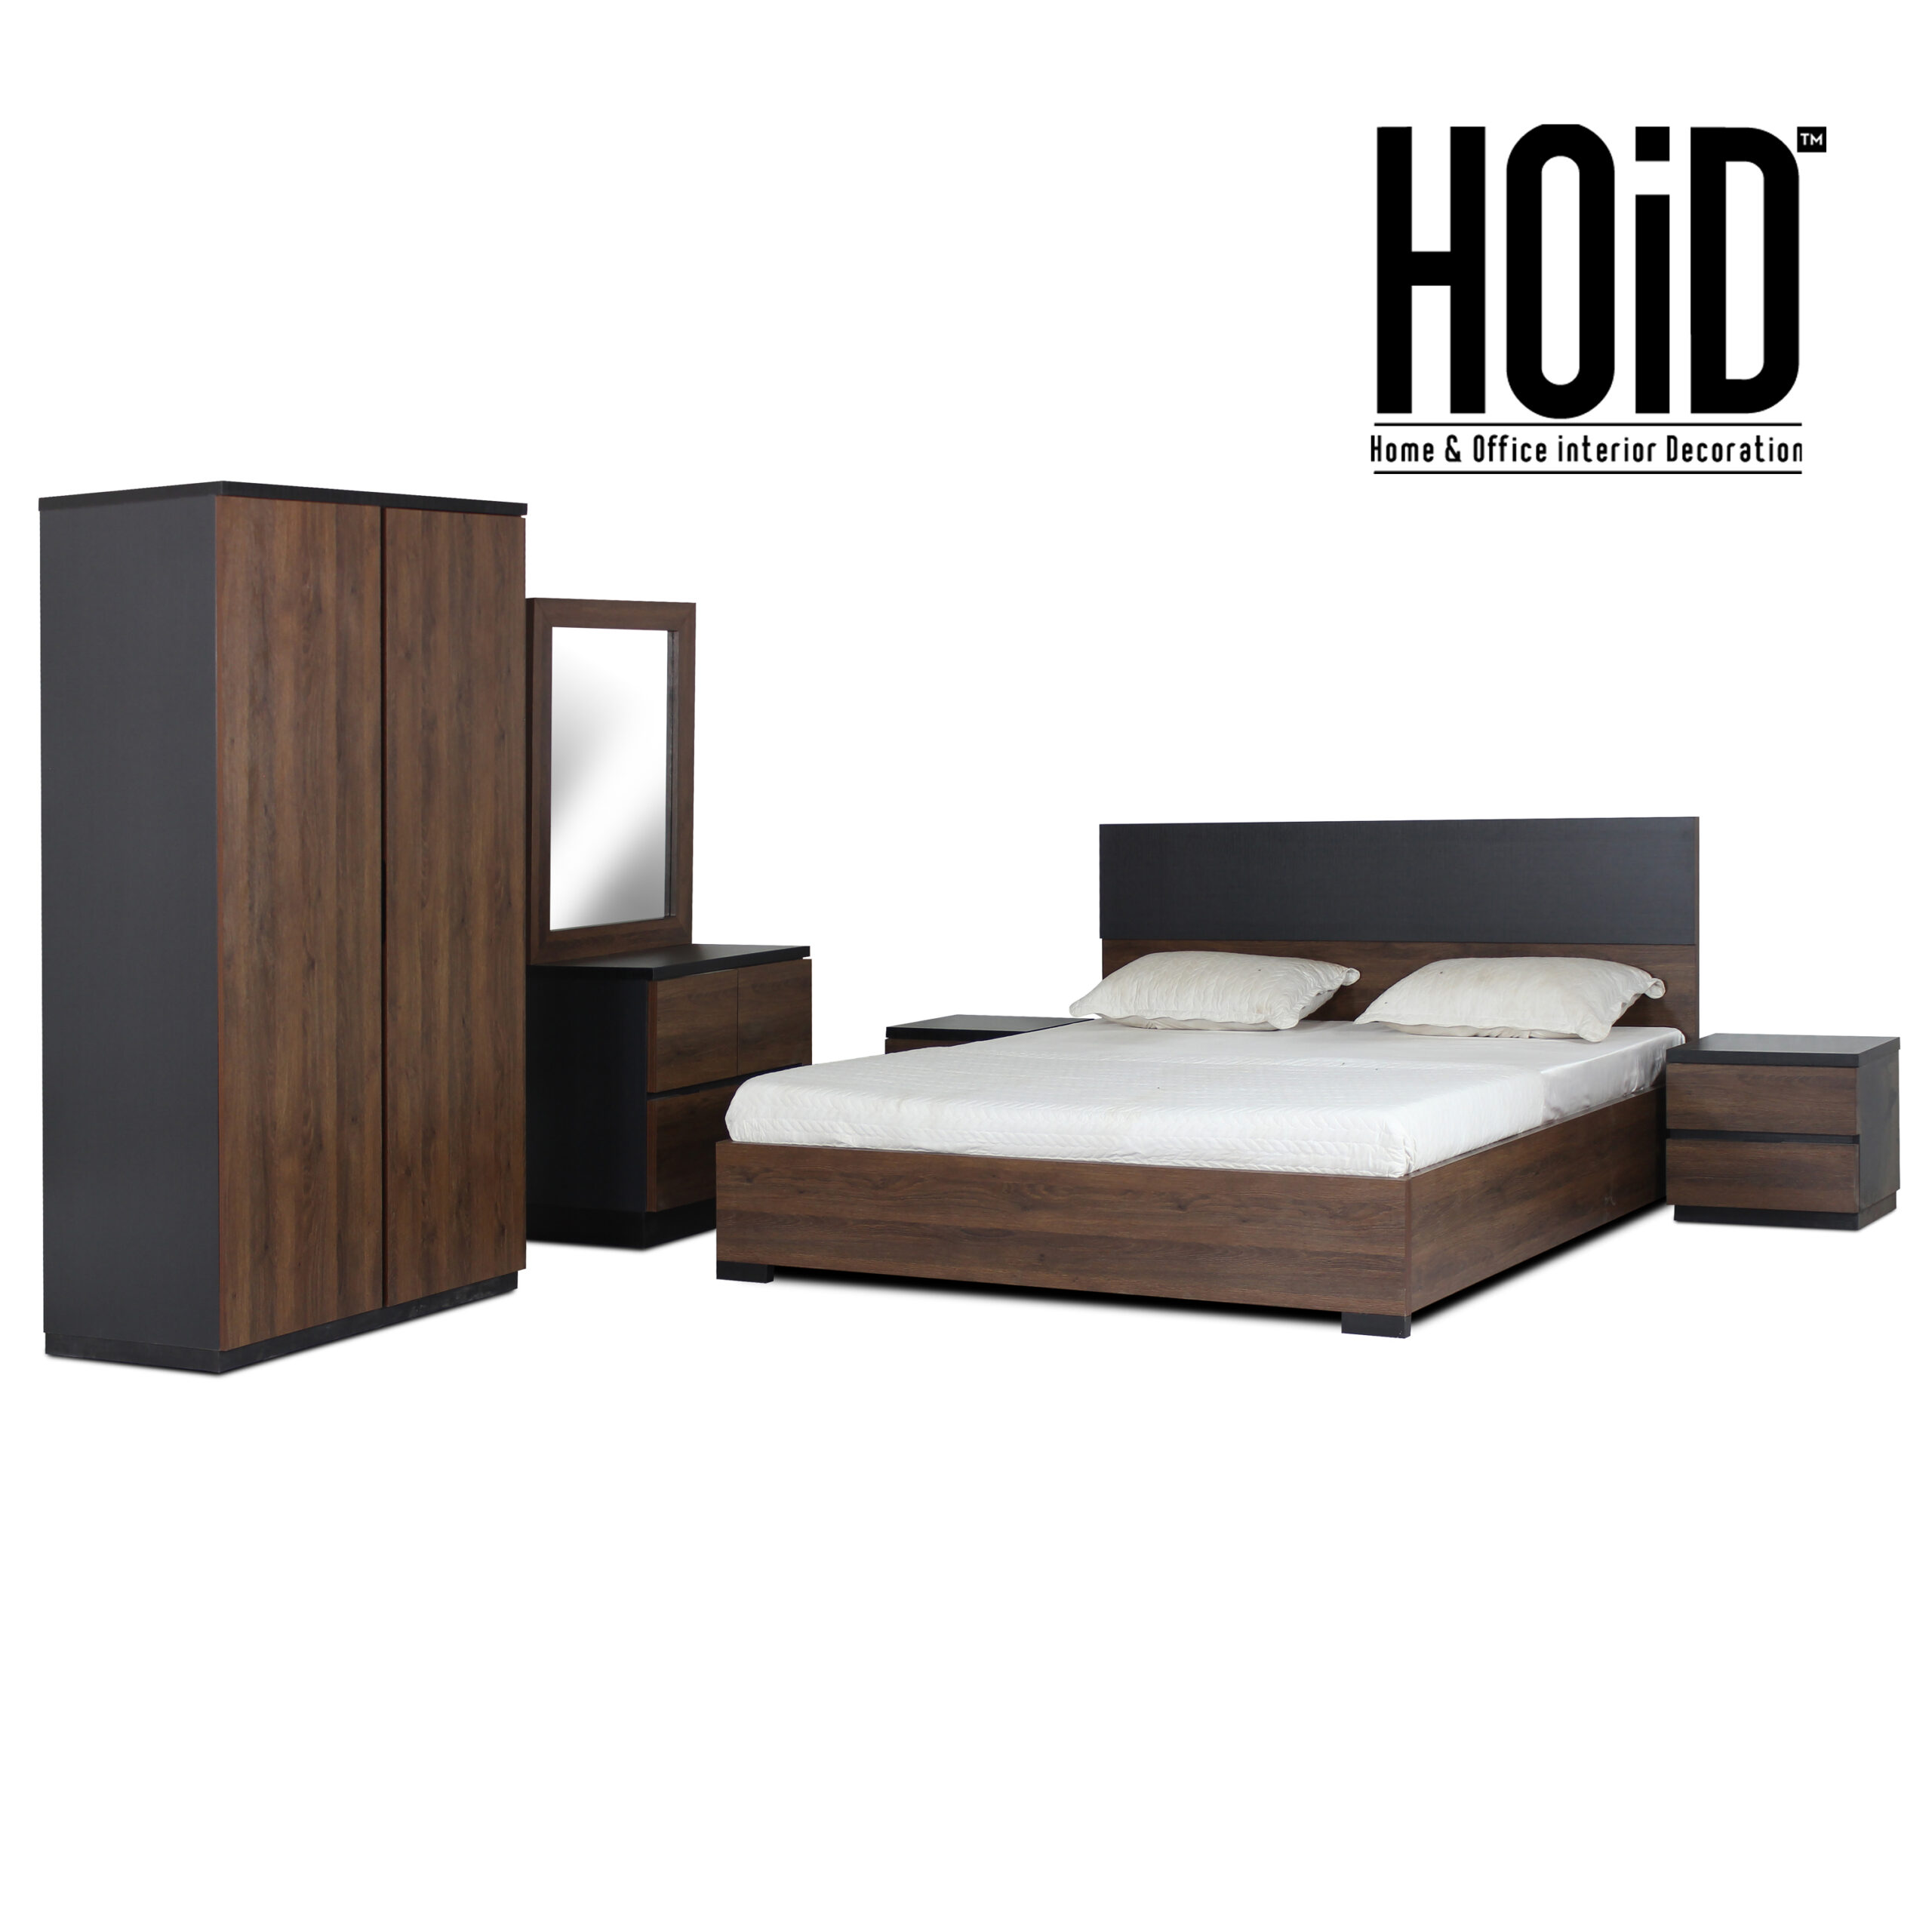 cora-bed-set-with-2-door-wardrobe-1-scaled-2.jpg